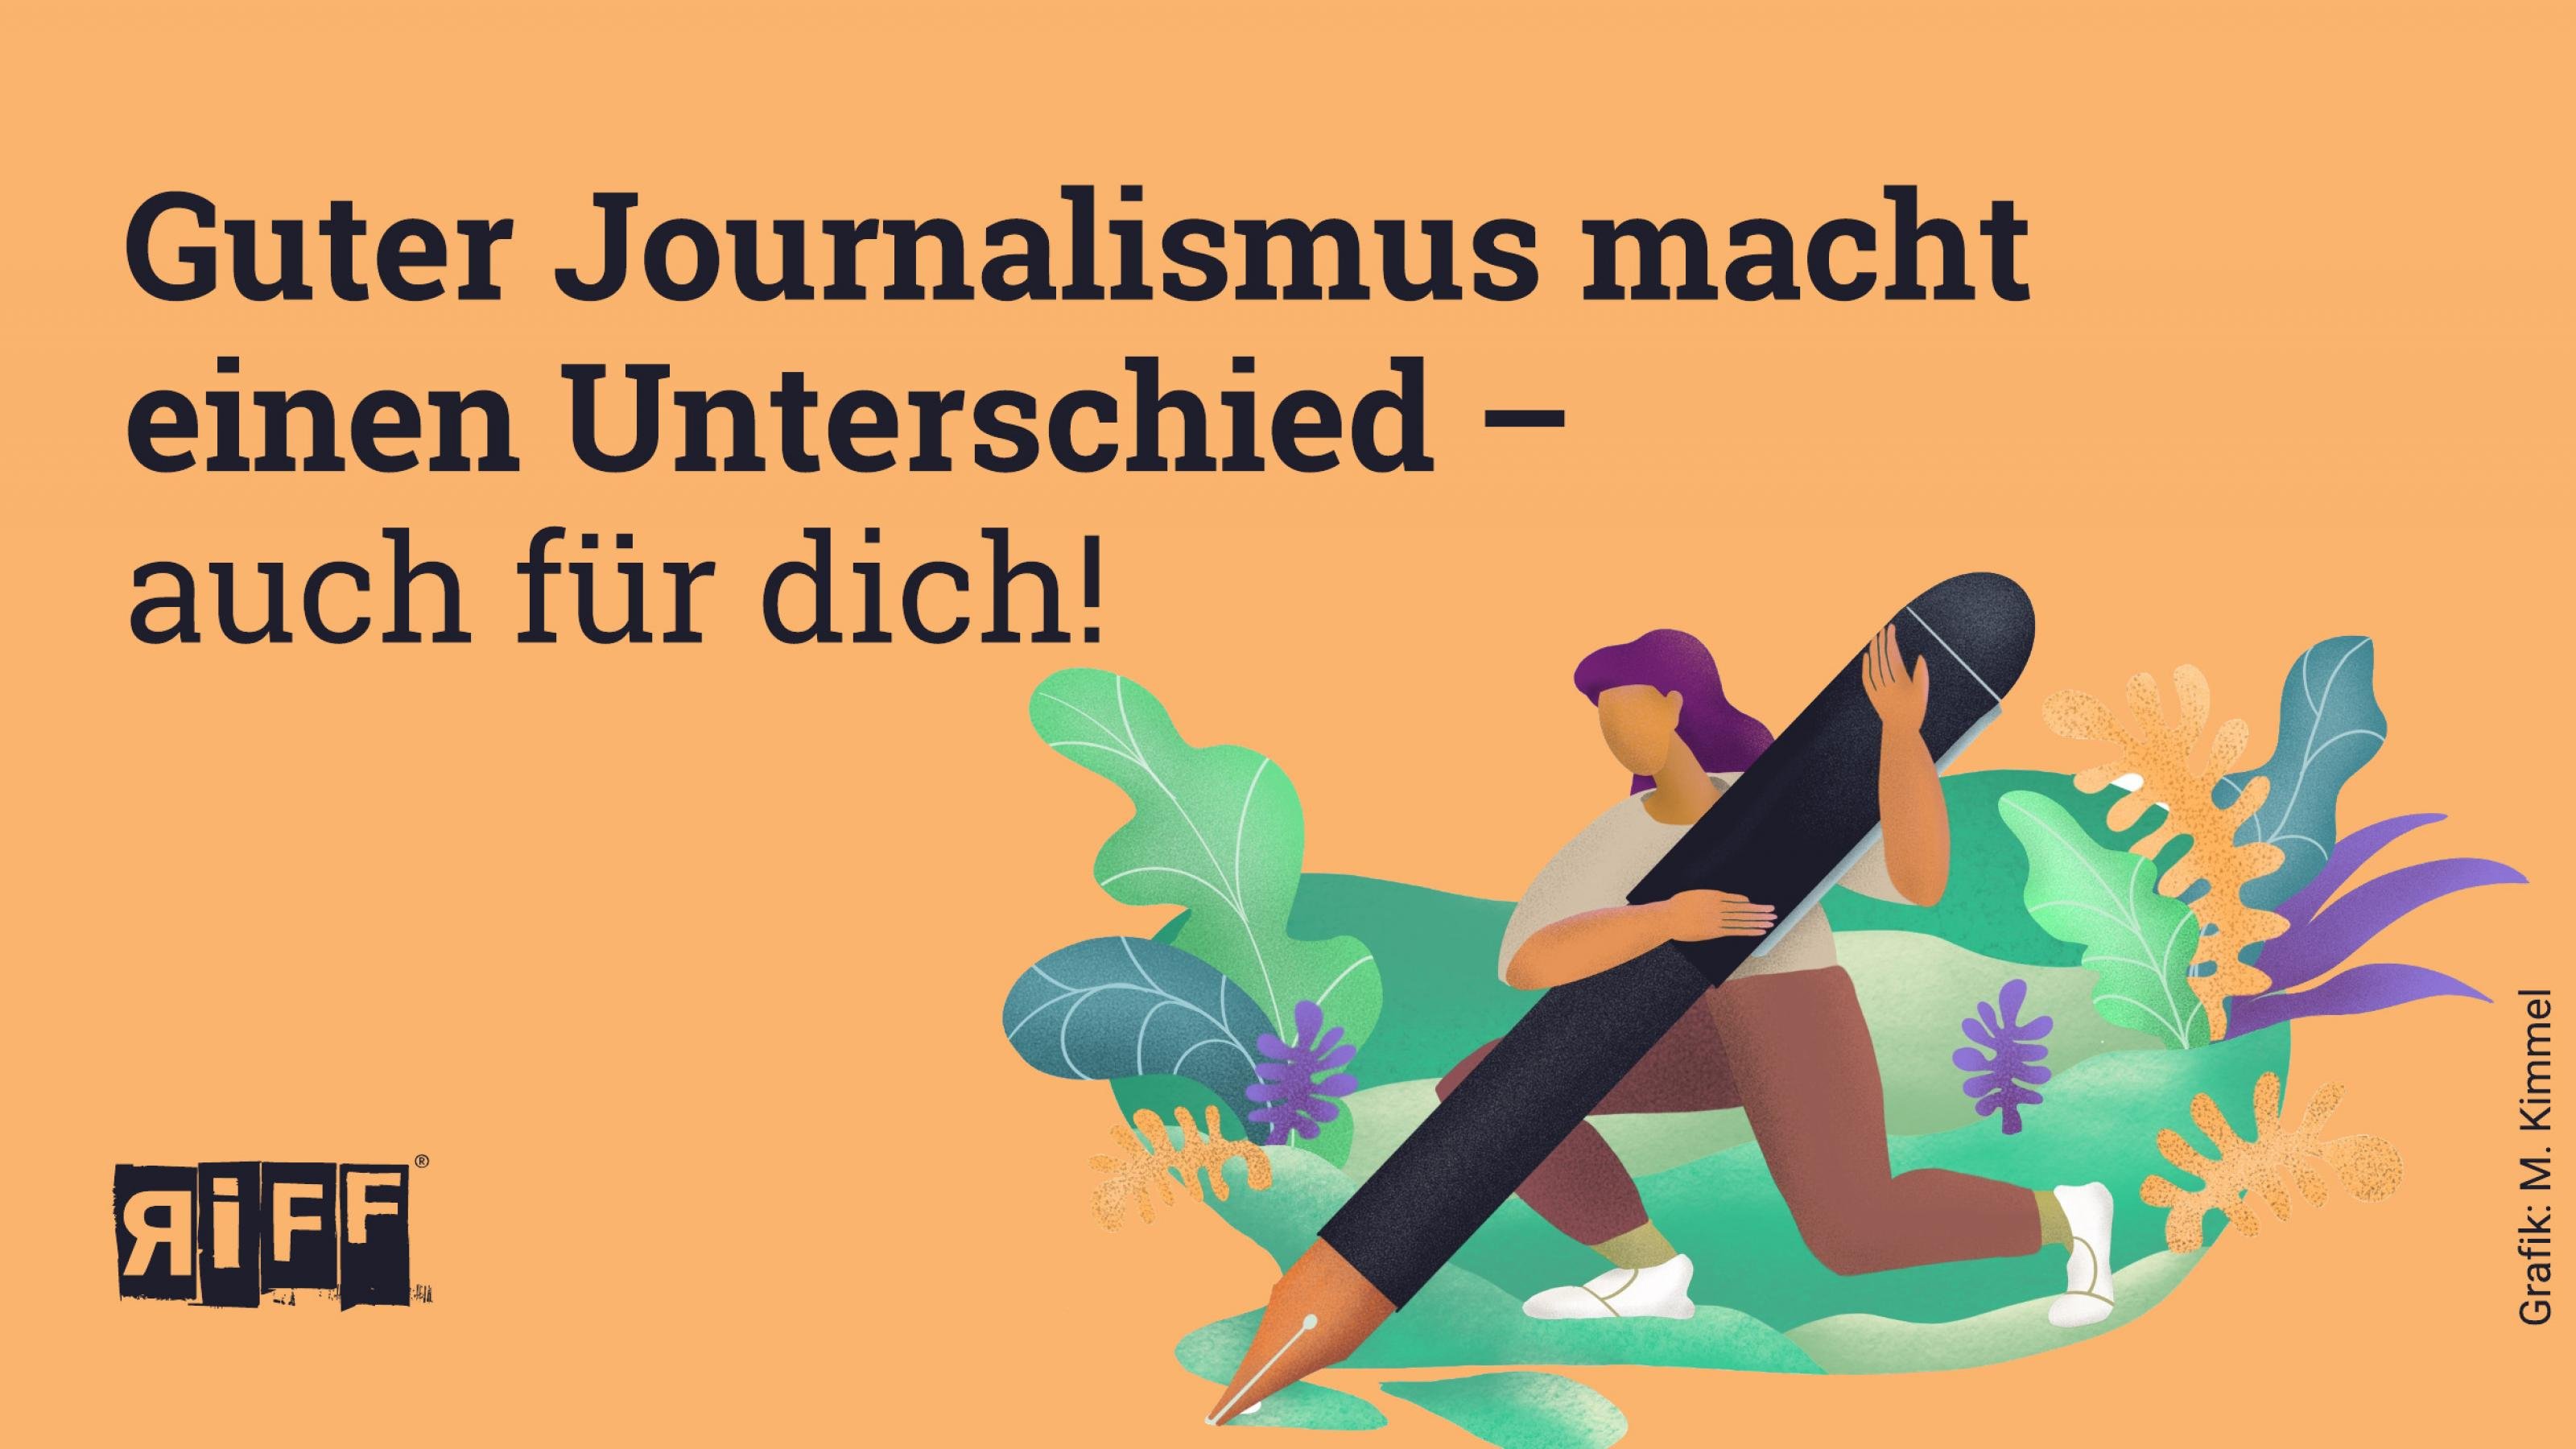 Bildkachel mit Grafik: Frau hält menschengroßen Stift. Darauf der Text: Guter Journalismus macht einen Unterschied – auch für dich!